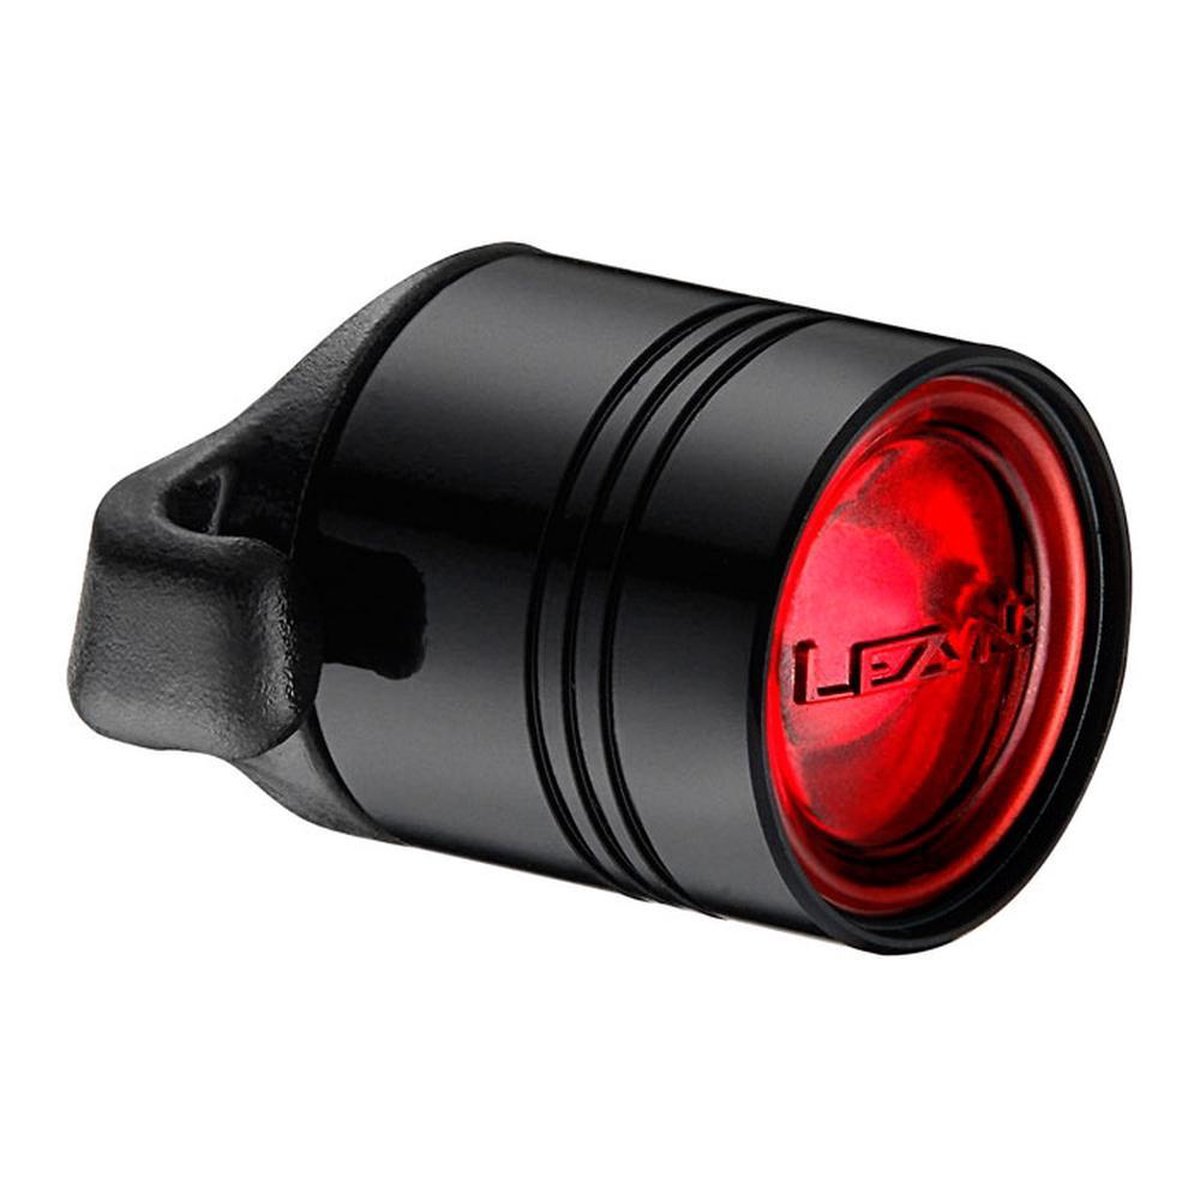 Lezyne Femto Drive Front Koplamp – Fietslamp – Fiets koplamp – Fiets verlichting – Veiligheidslampje – 4 knipperstanden – 7 lumen - Zwart